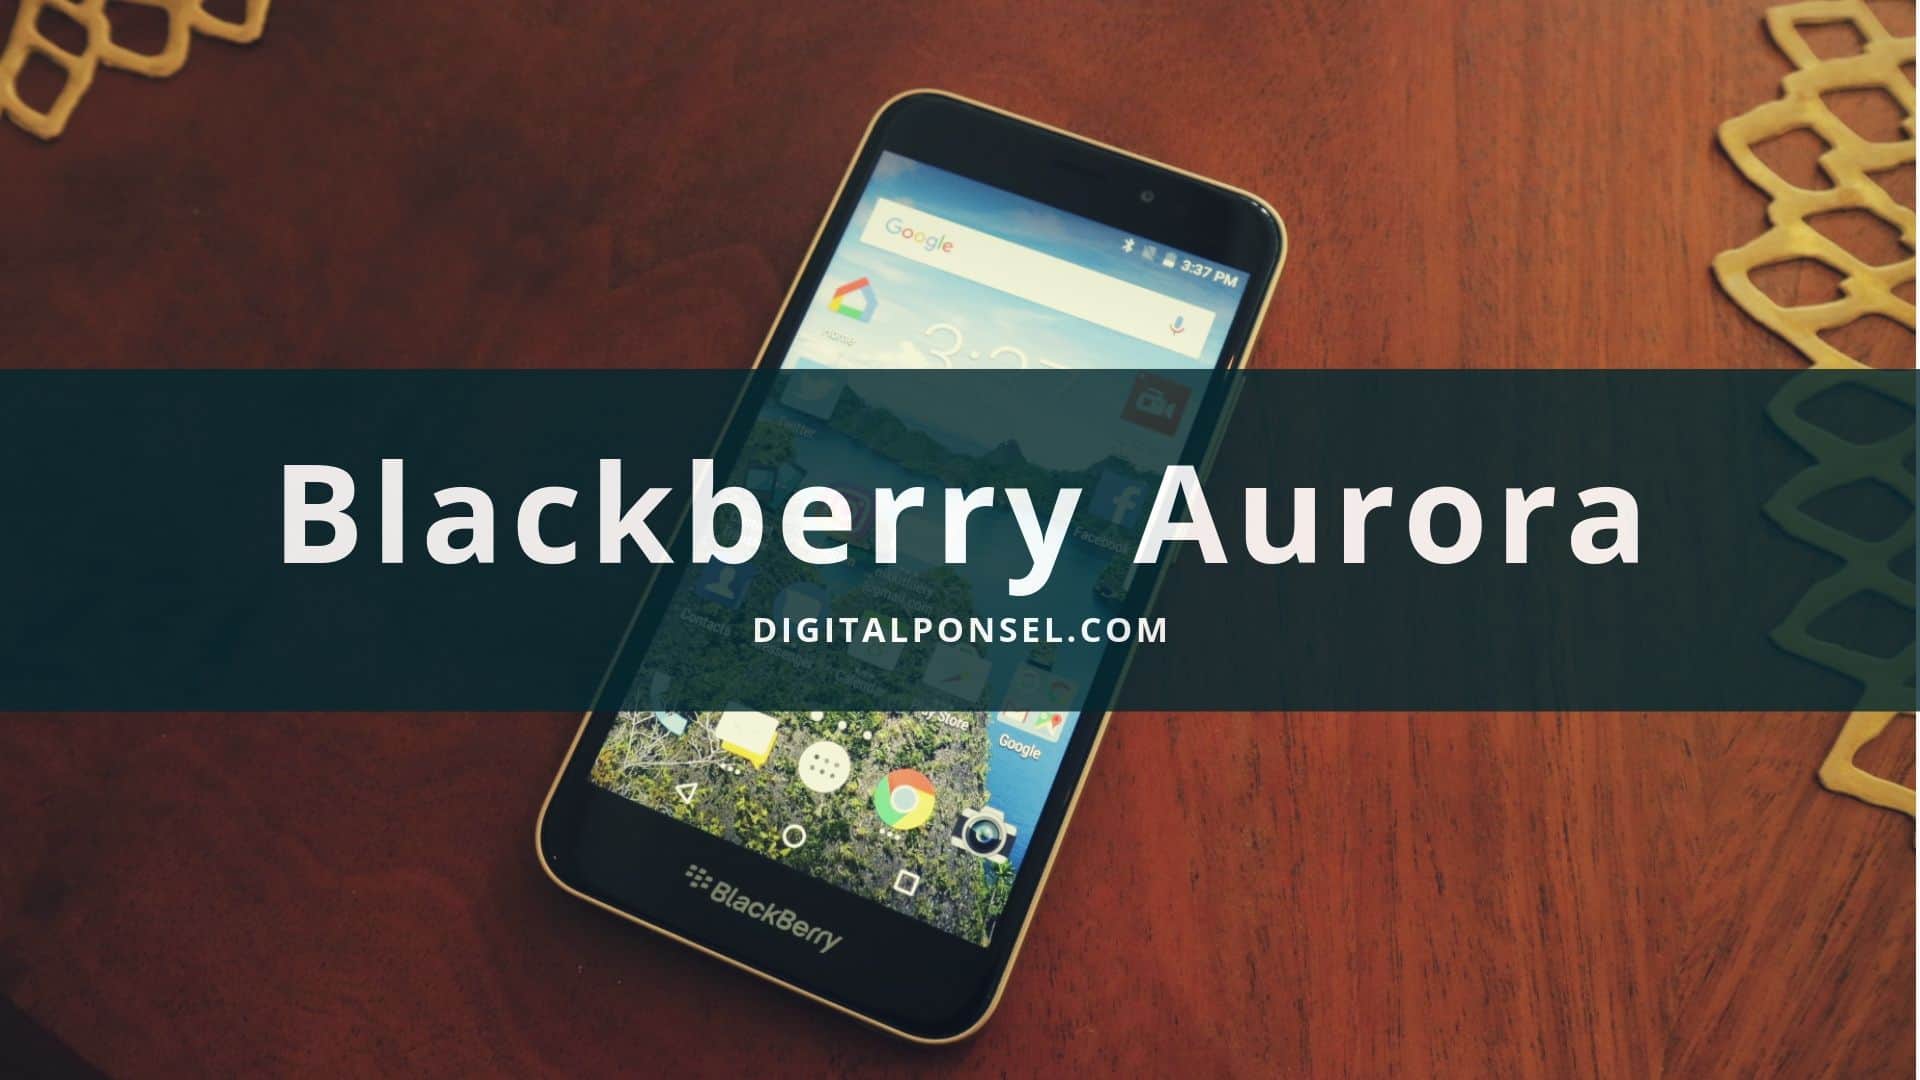 Harga Blackberry Aurora Terbaru dan Spesifikasi September 